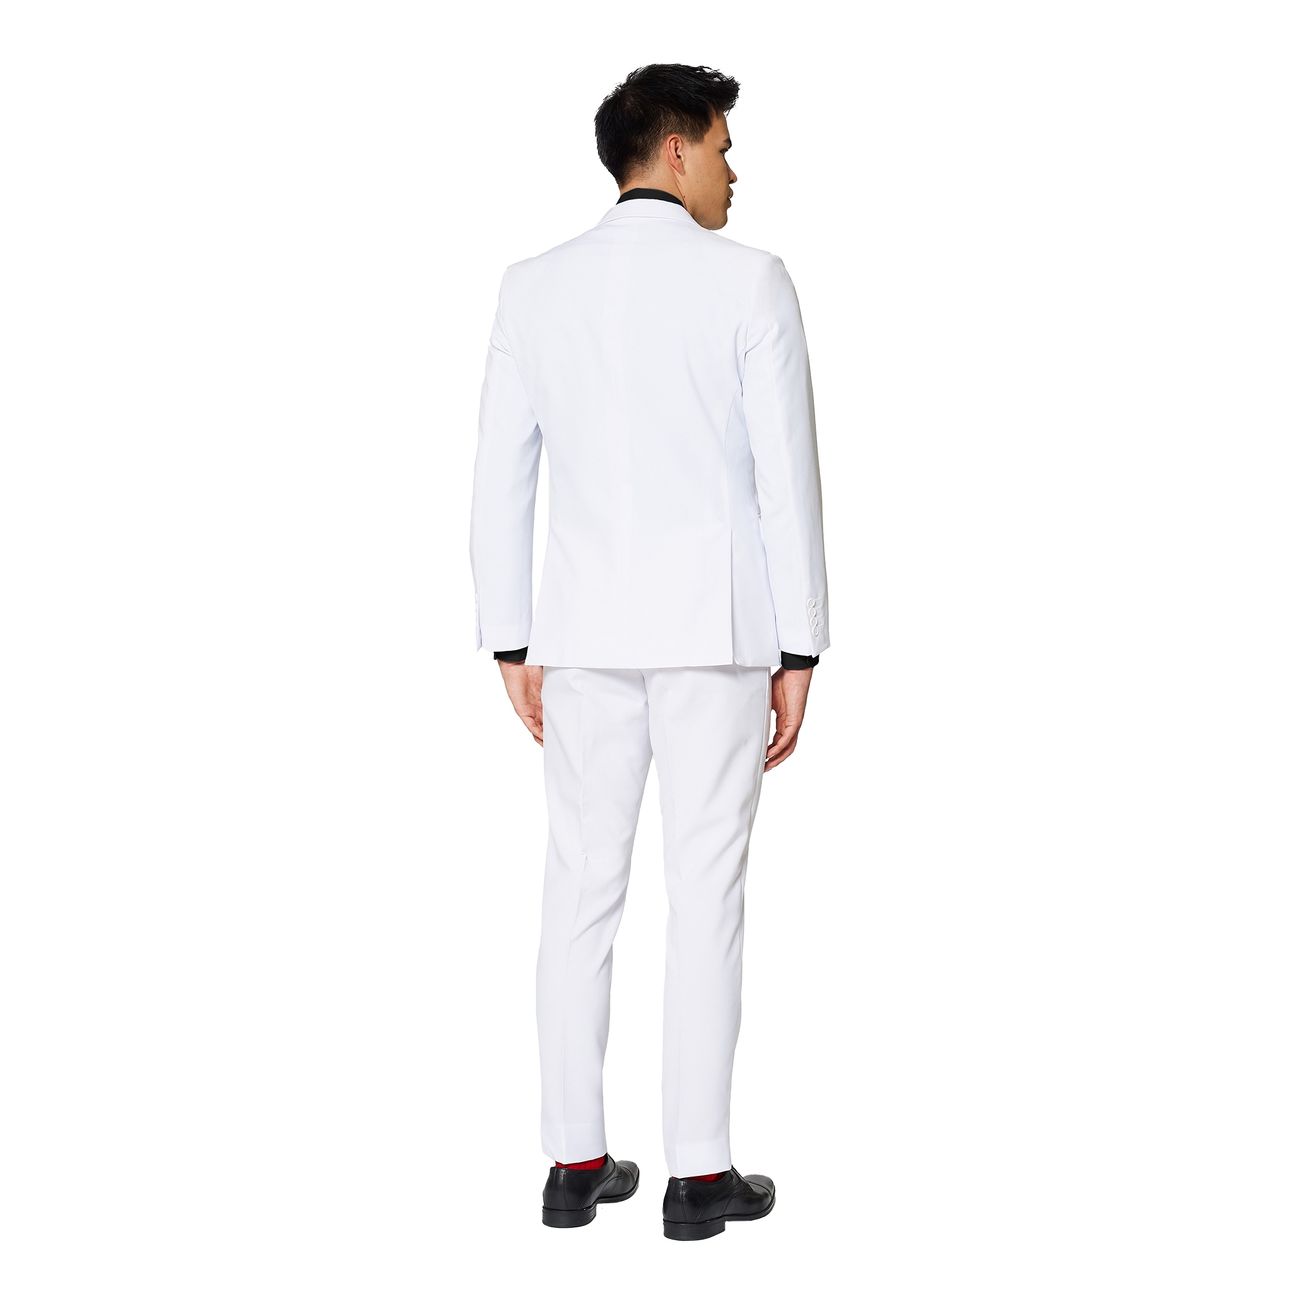 opposuits-white-knight-kostym-31871-7